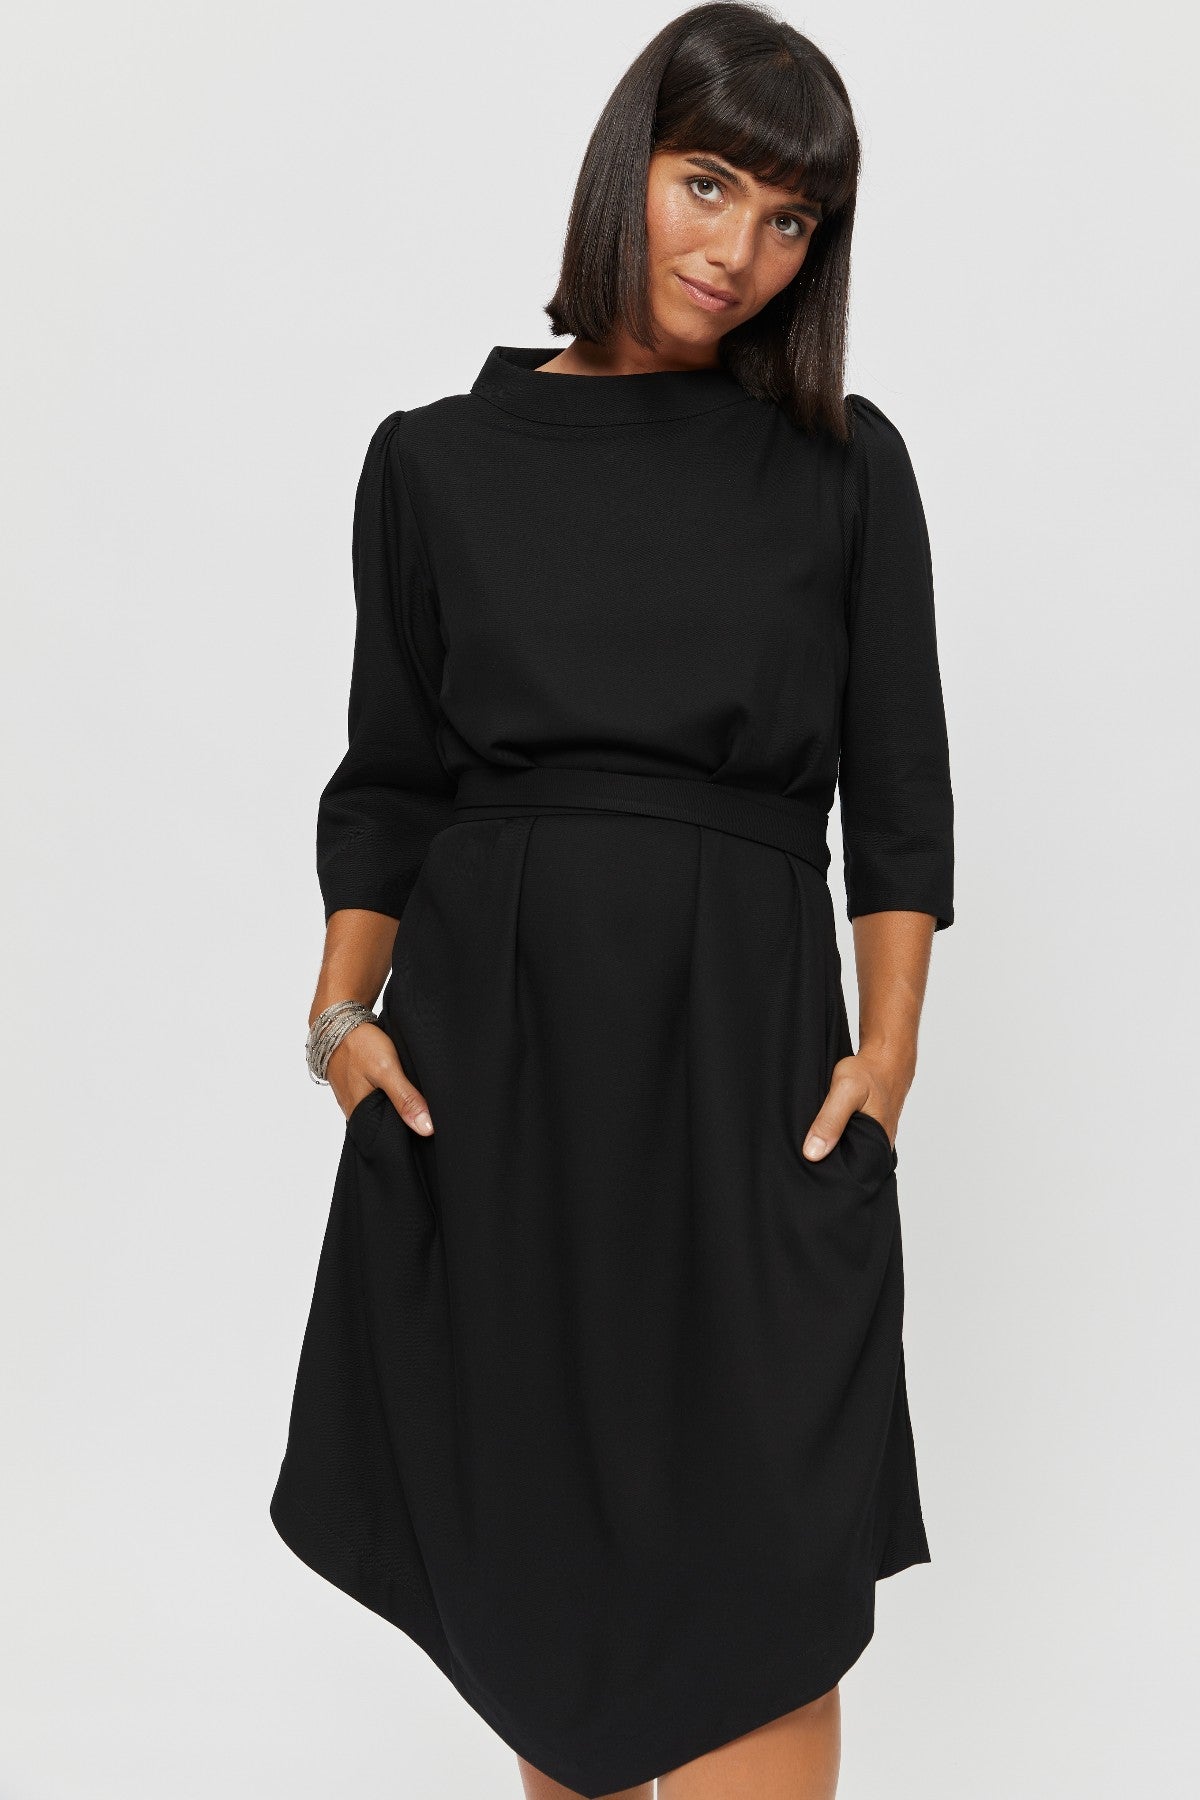 Elegant Midi Dress SUZI, Formal A Line Dress in Black - AYANI